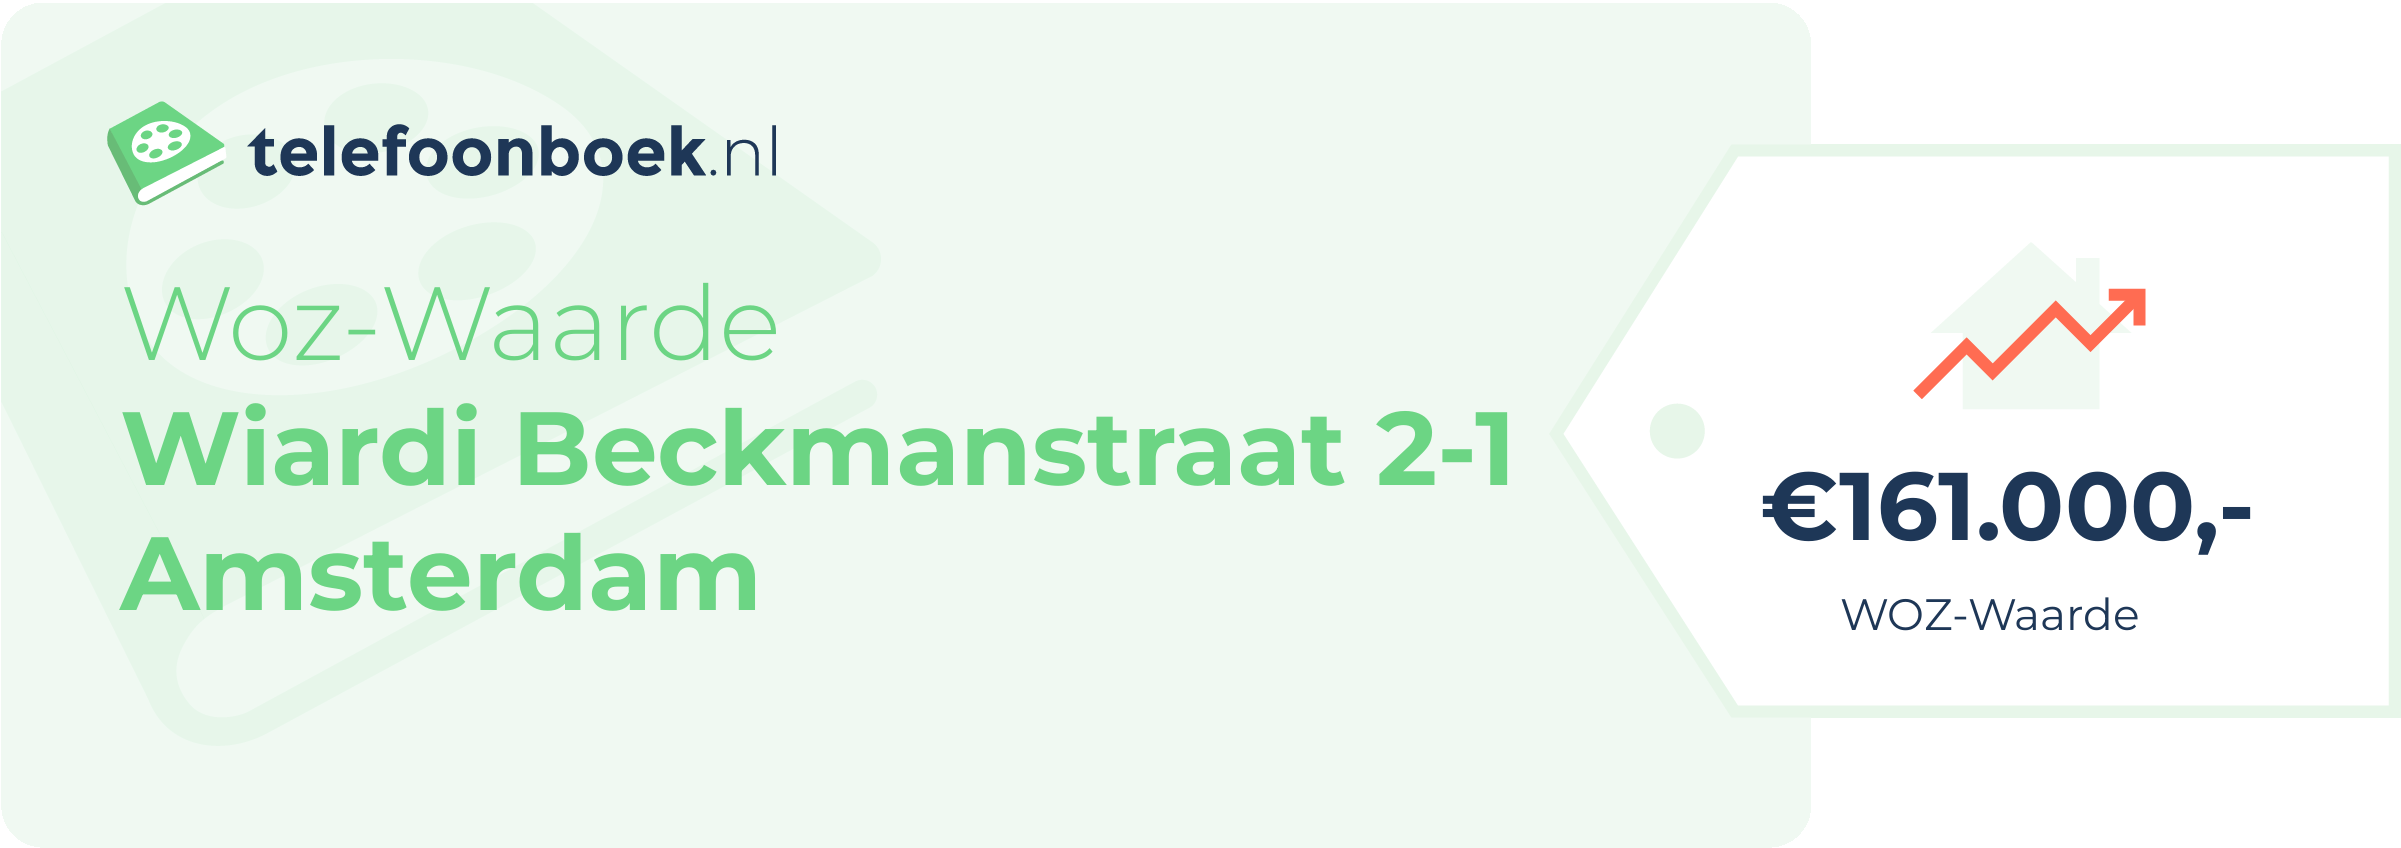 WOZ-waarde Wiardi Beckmanstraat 2-1 Amsterdam